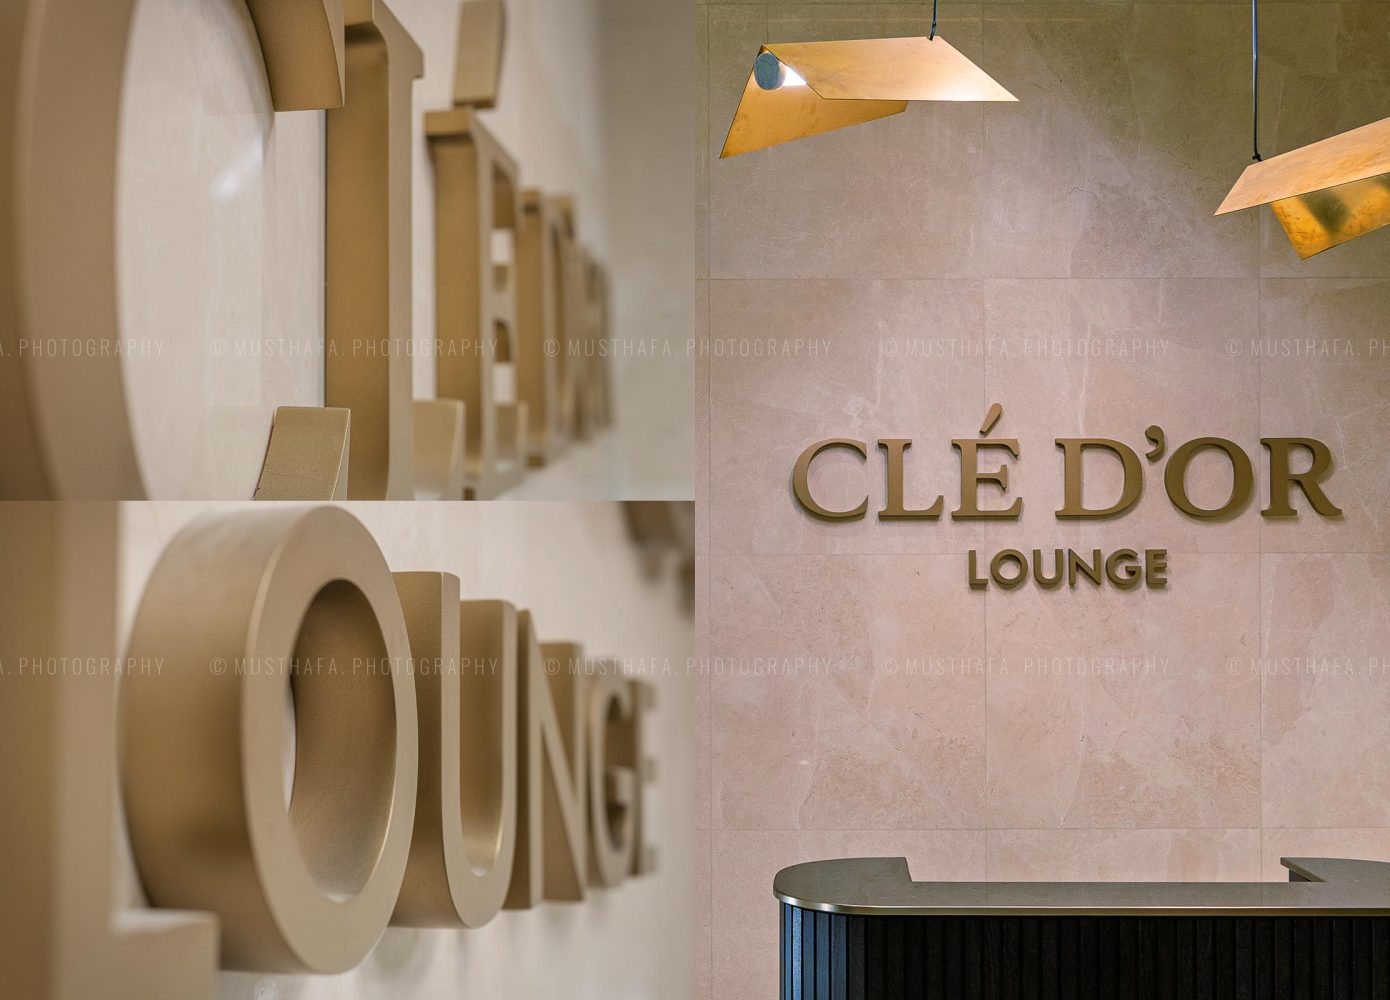 CleDor Luxury Lounge Mall of Emirates interior photography Dubai Photographer Kuwait Abu Dhabi UAE Creative Architecture 05